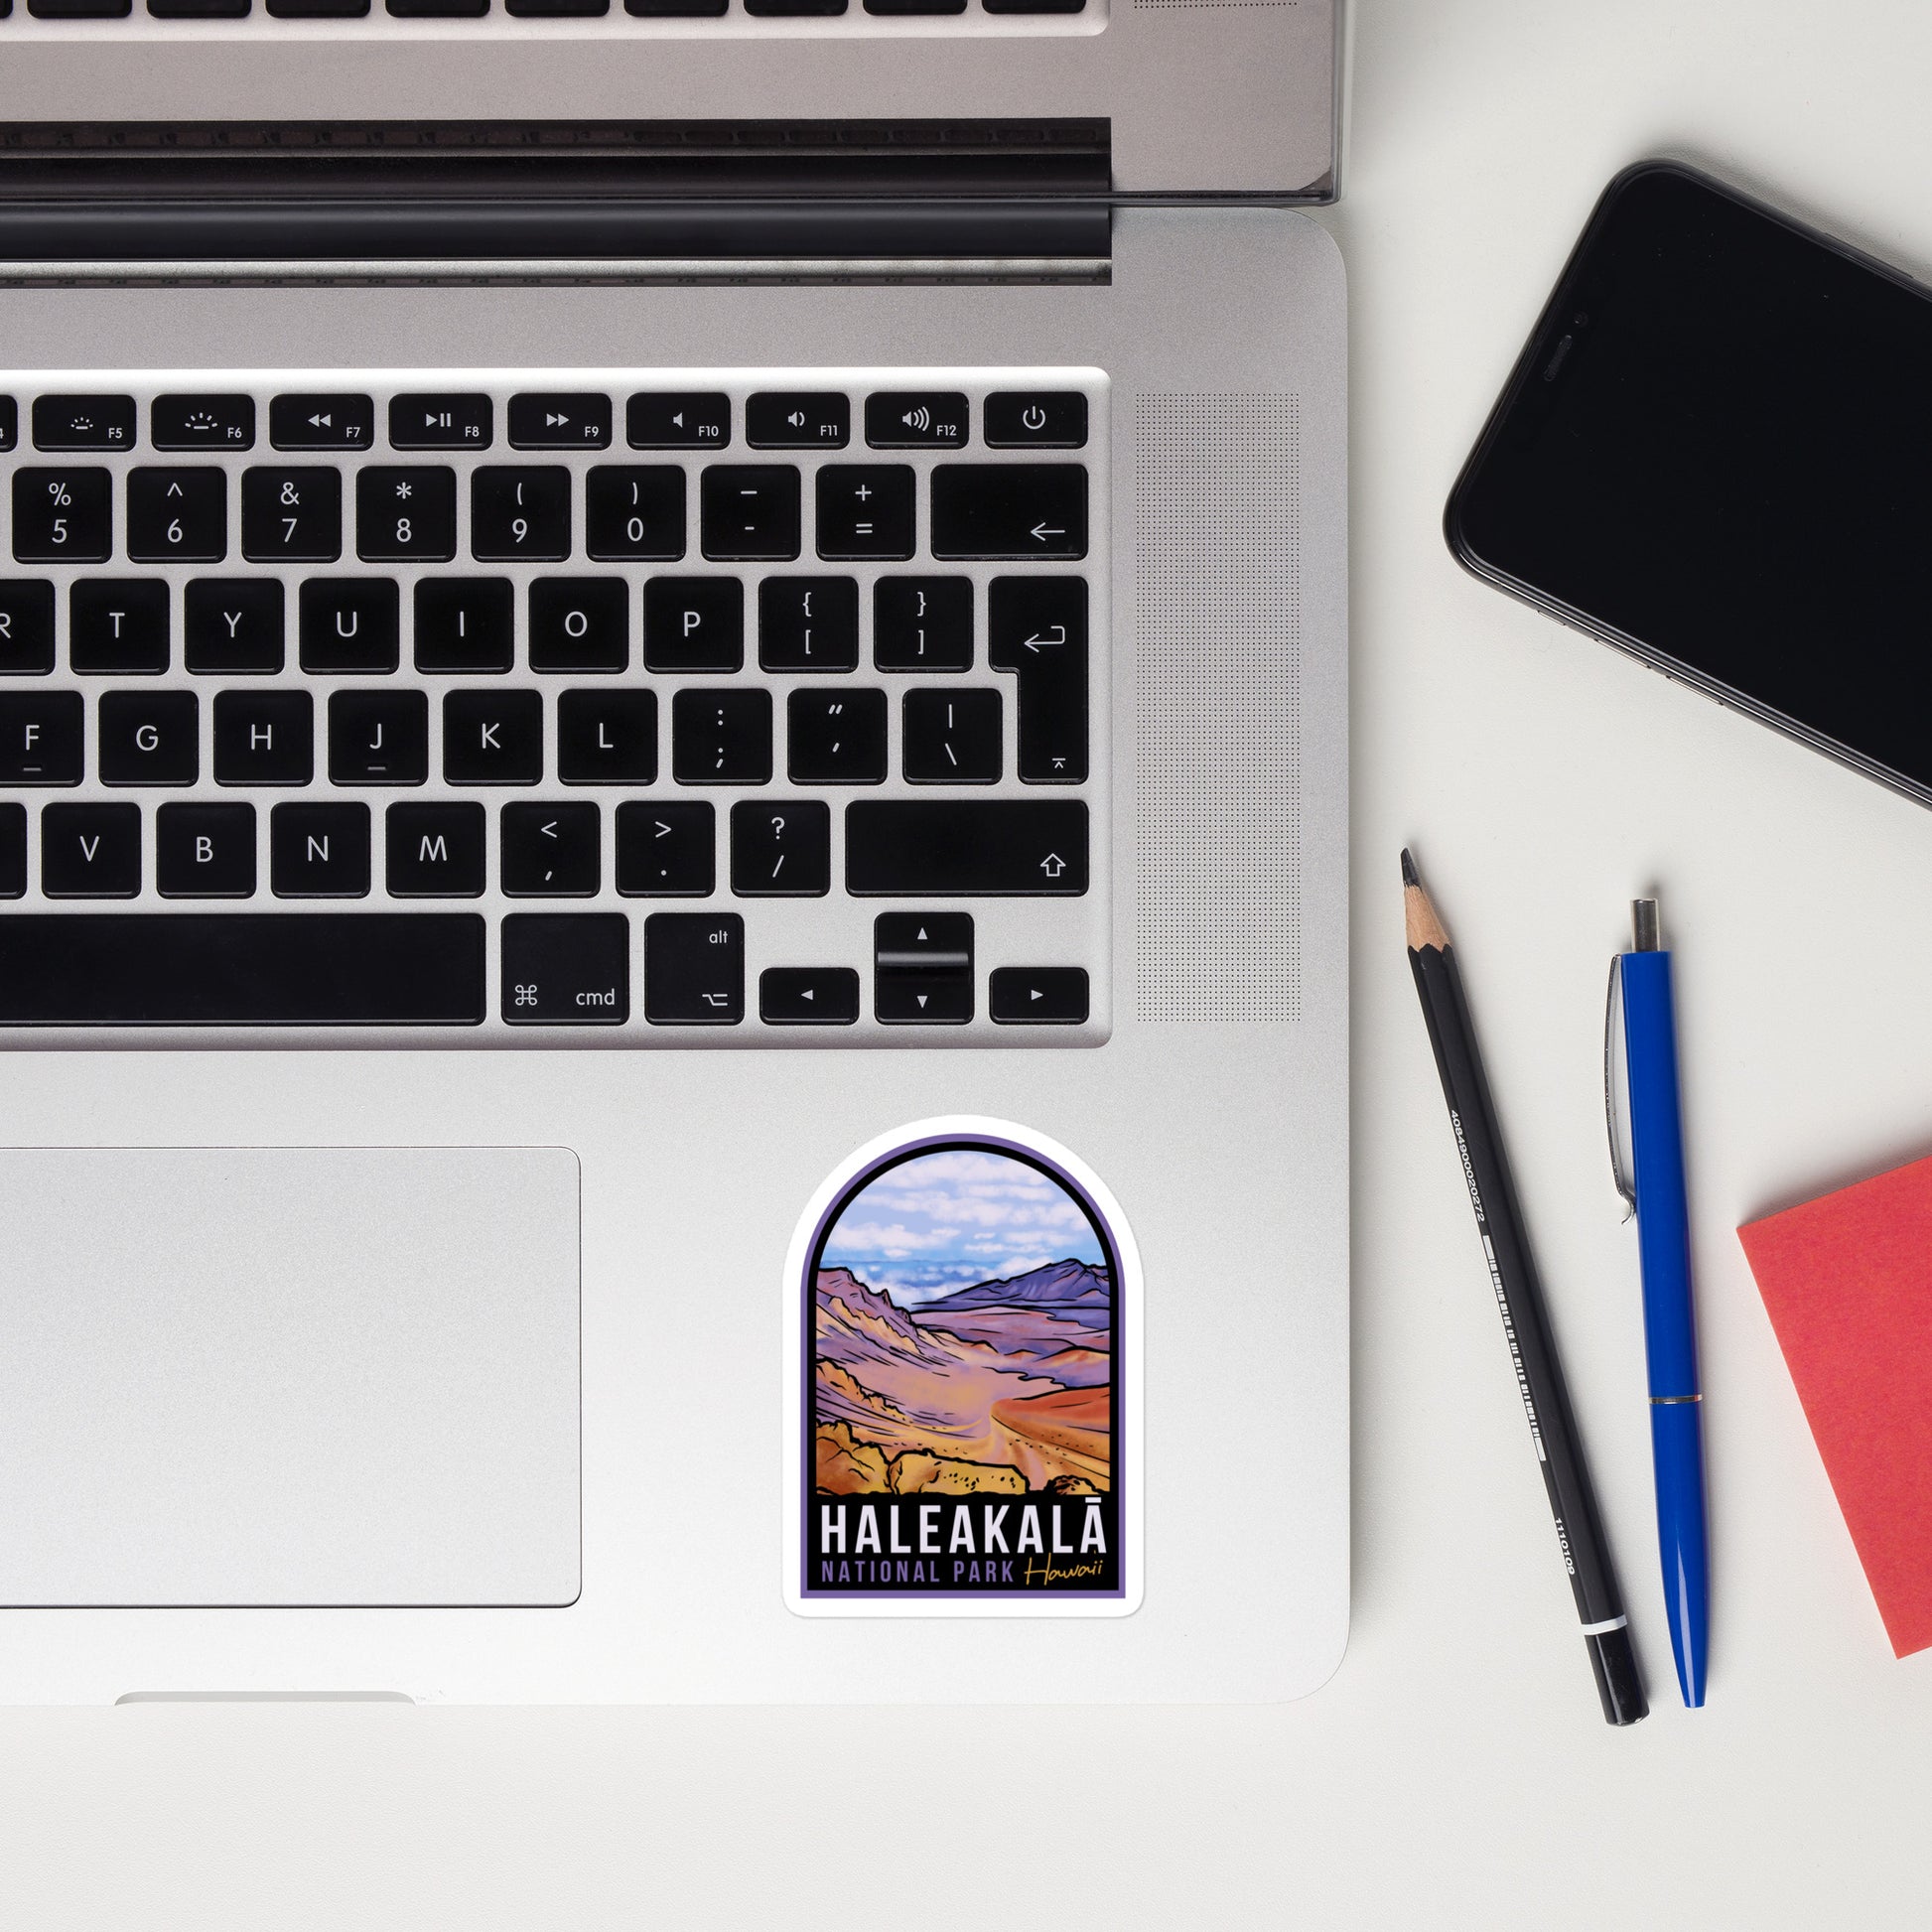 A sticker of Haleakala National Park on a laptop